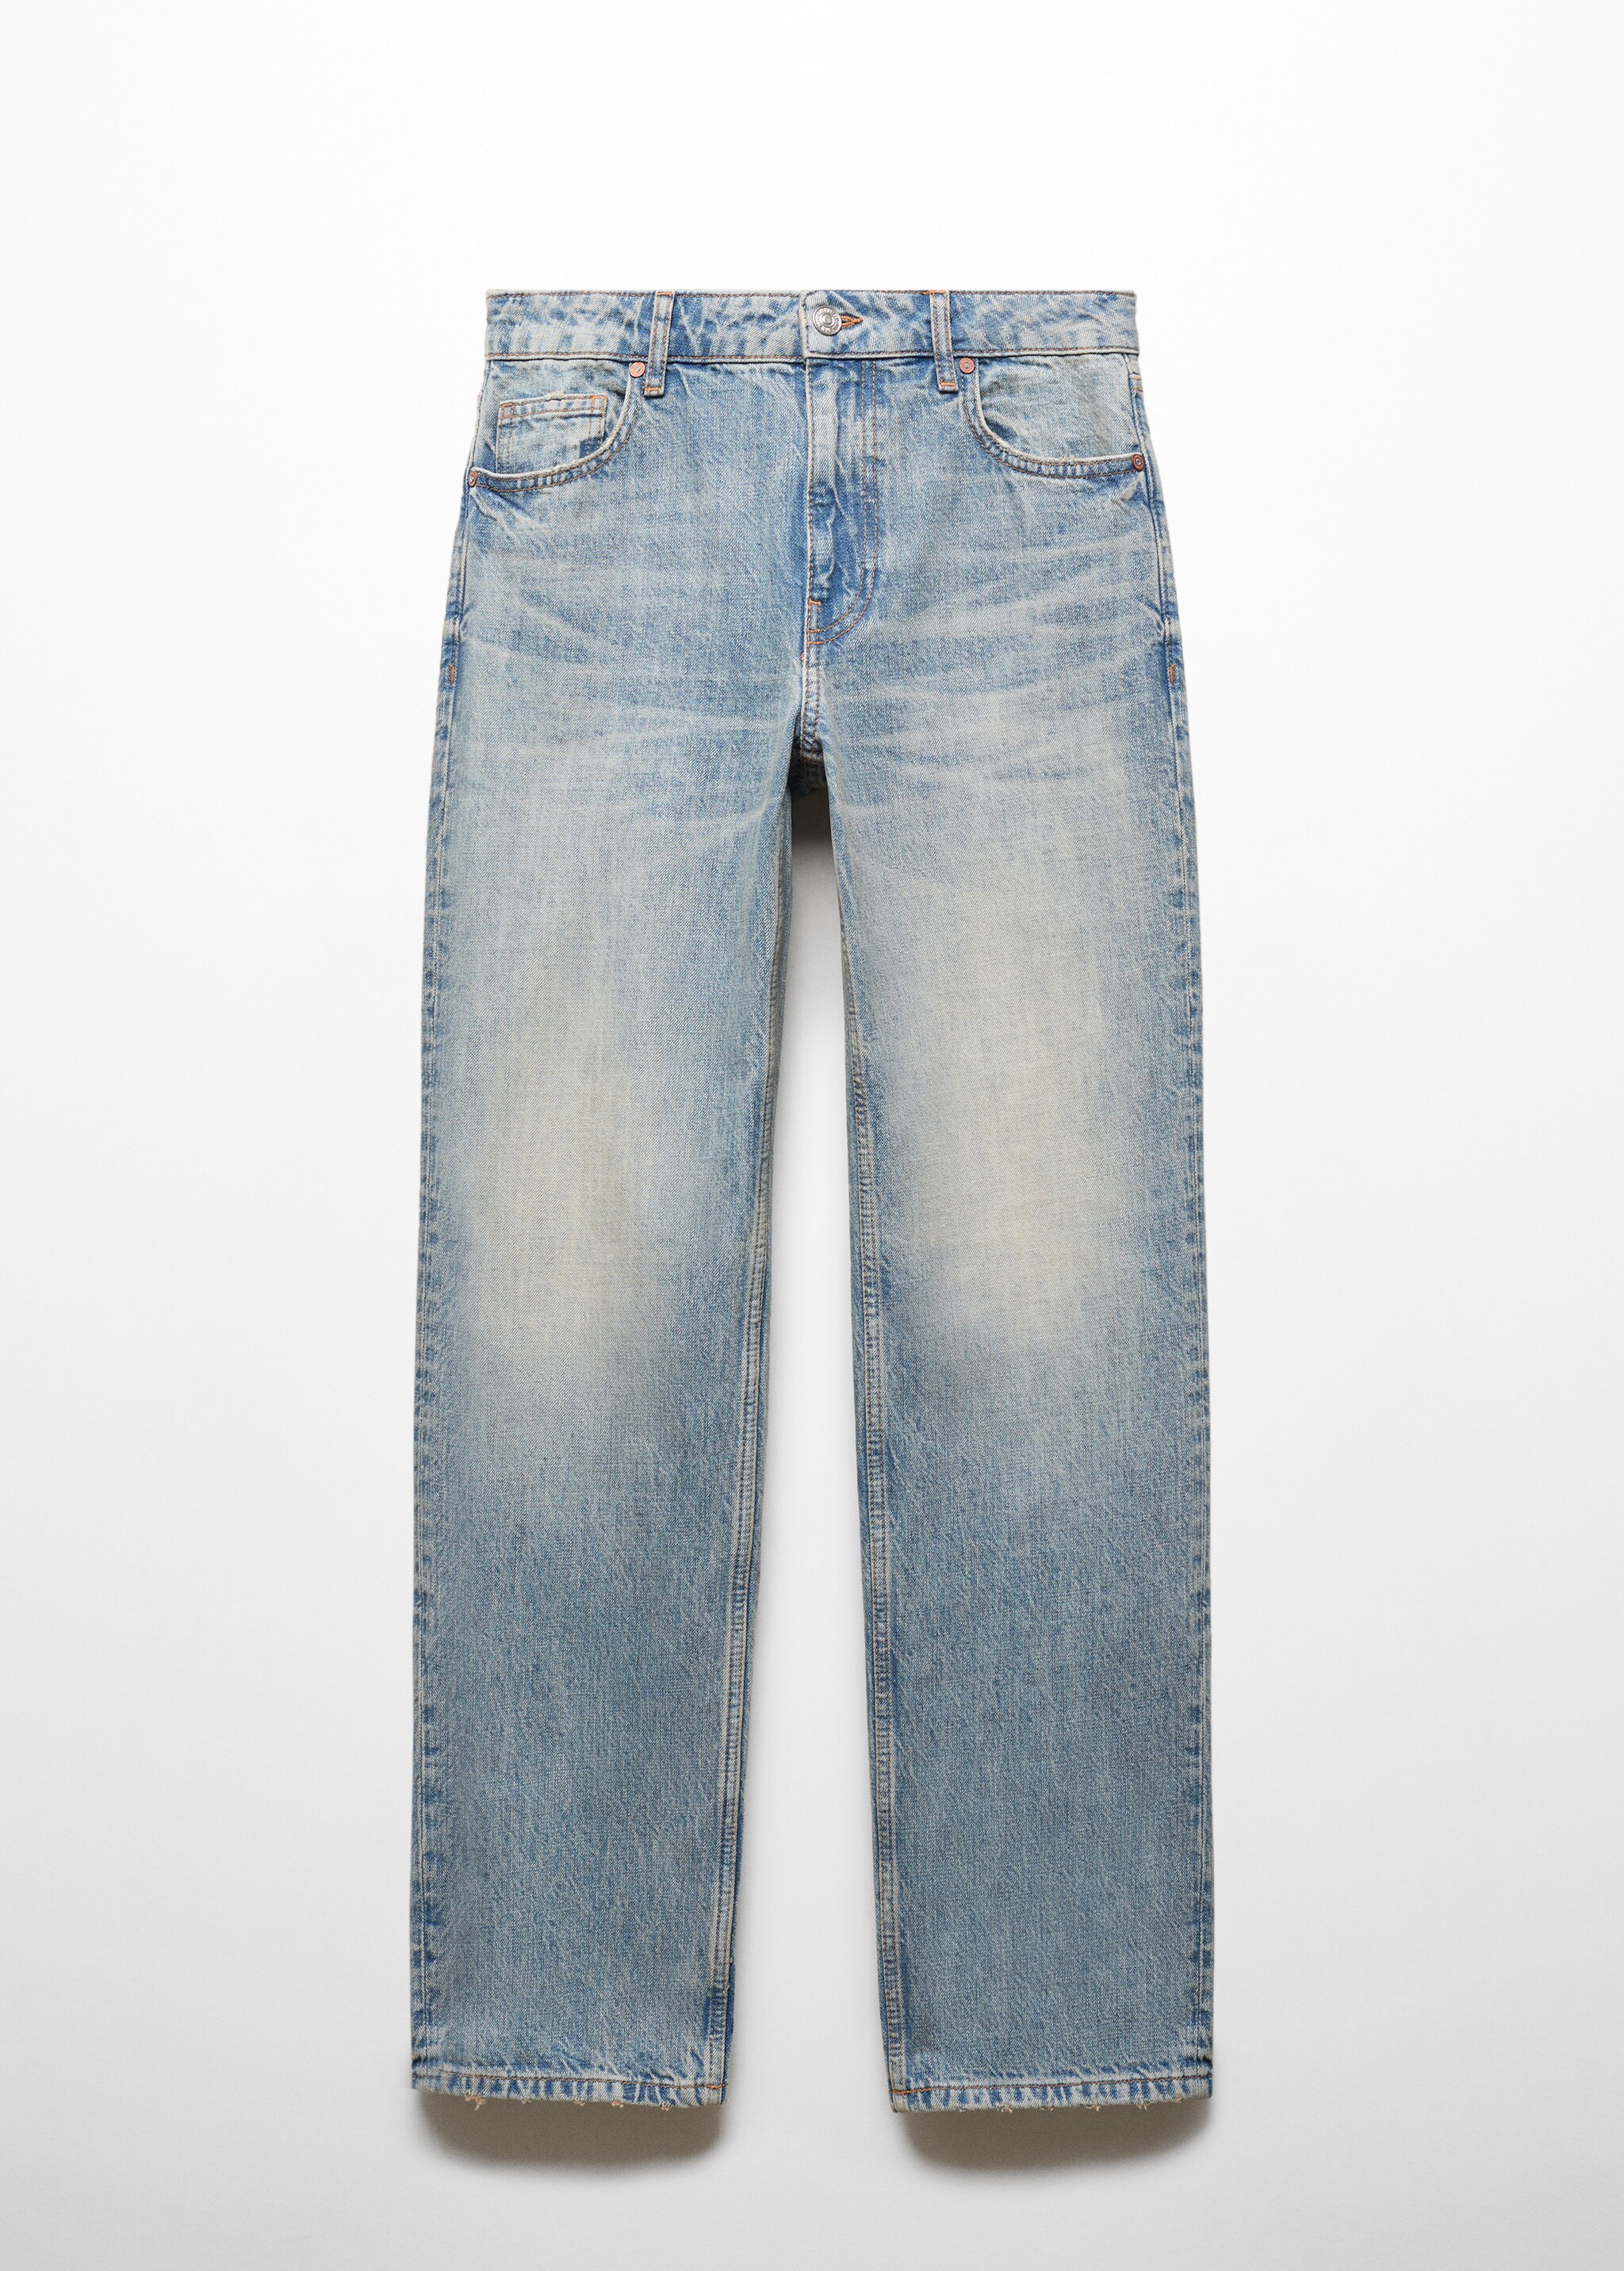 Прямые джинсы с заниженной талией - Изделие без модели